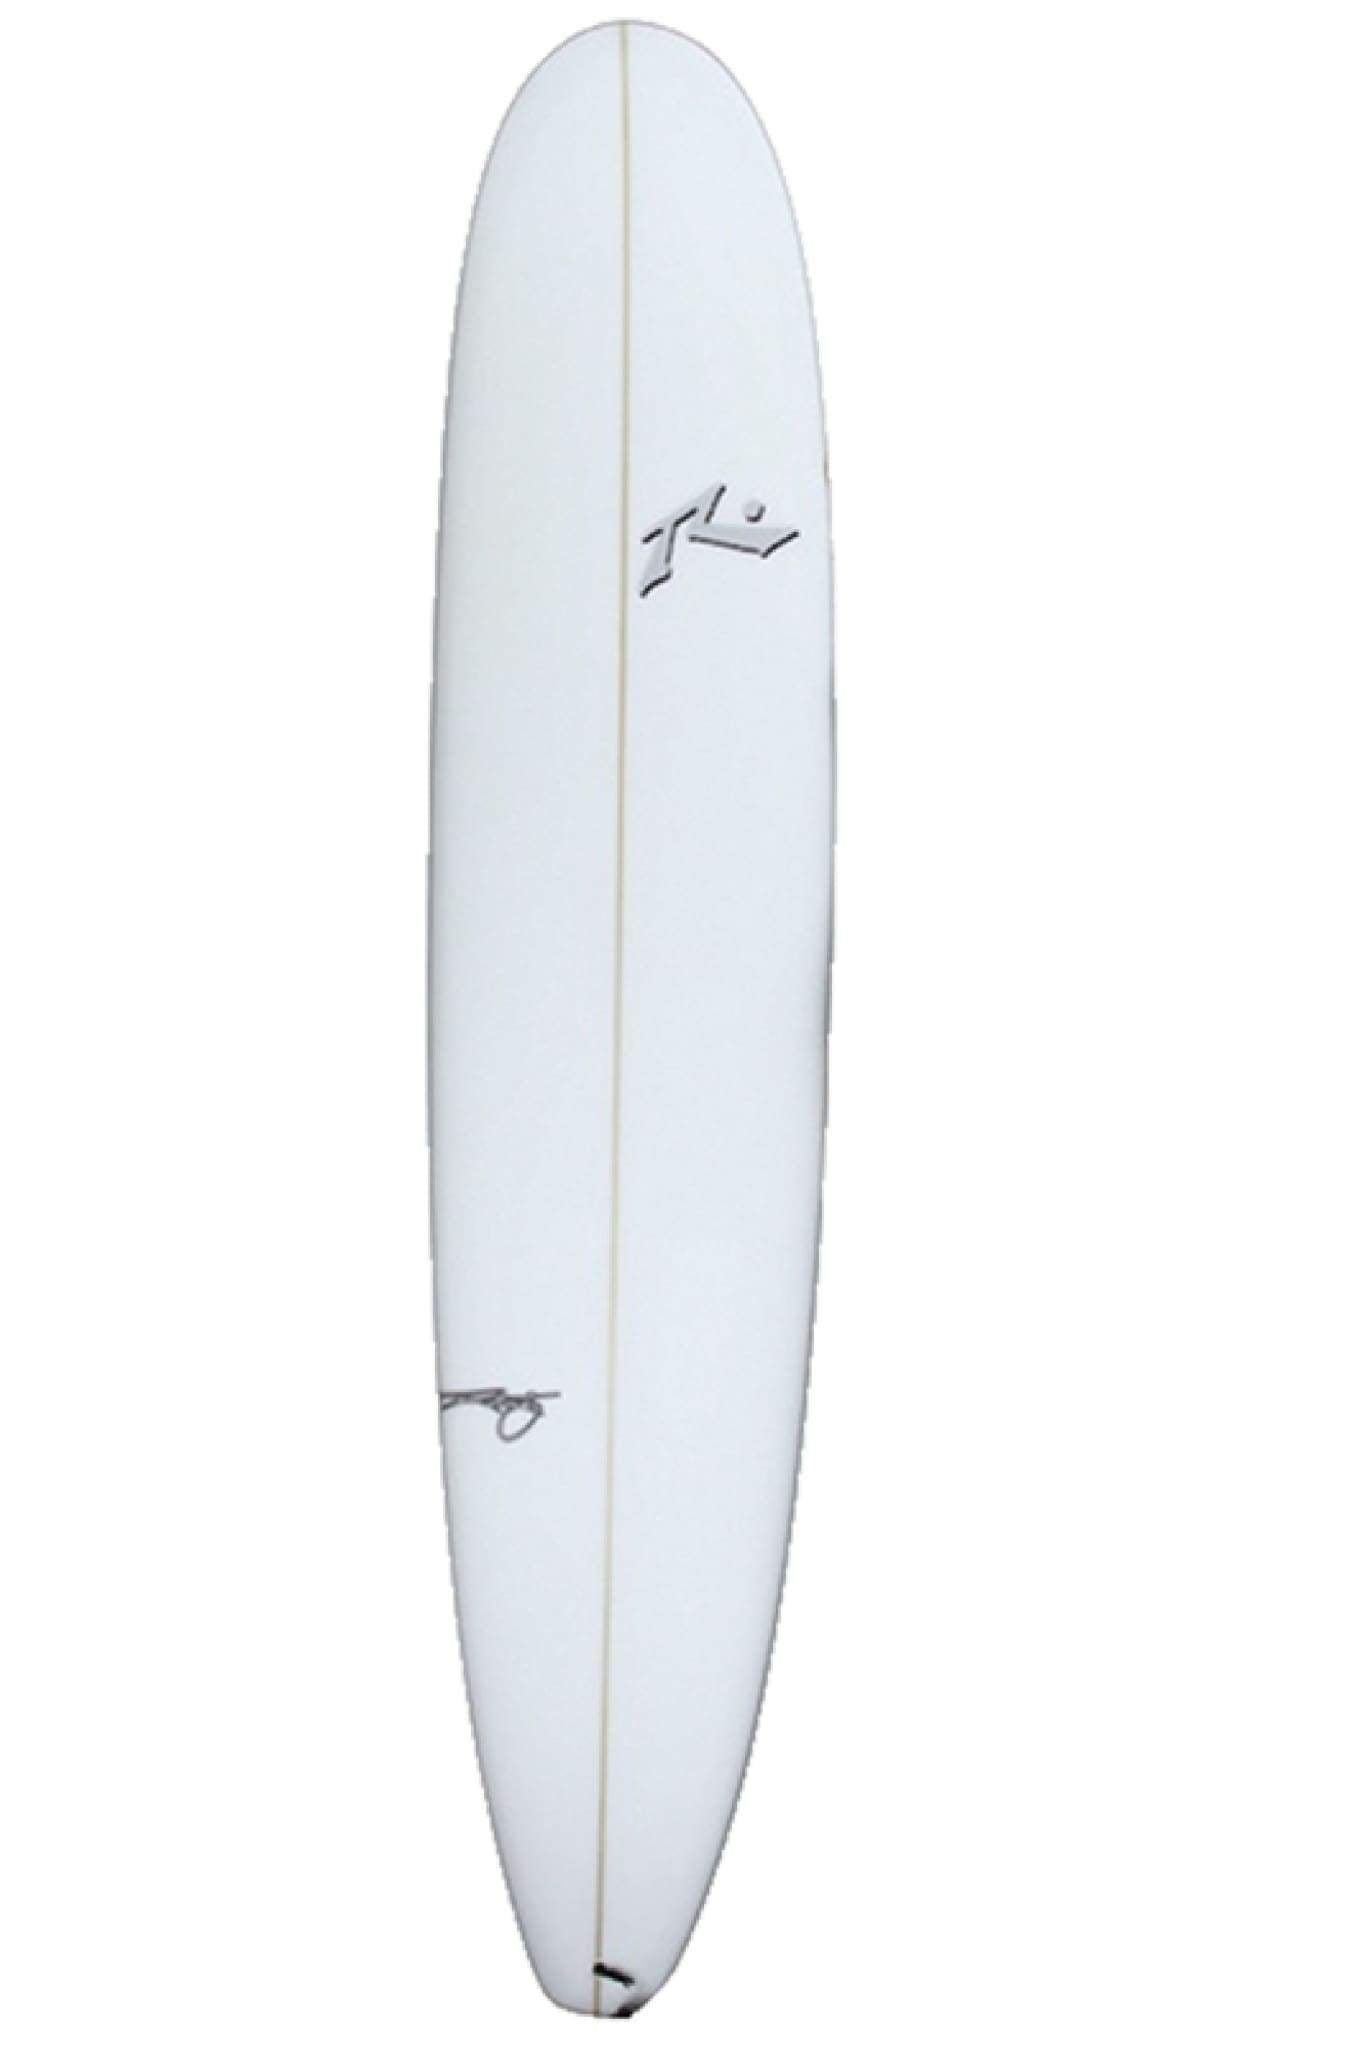 Buy El Dorado Longboard Online Rusty Surfboards Middle East – Rusty Surfboards ME